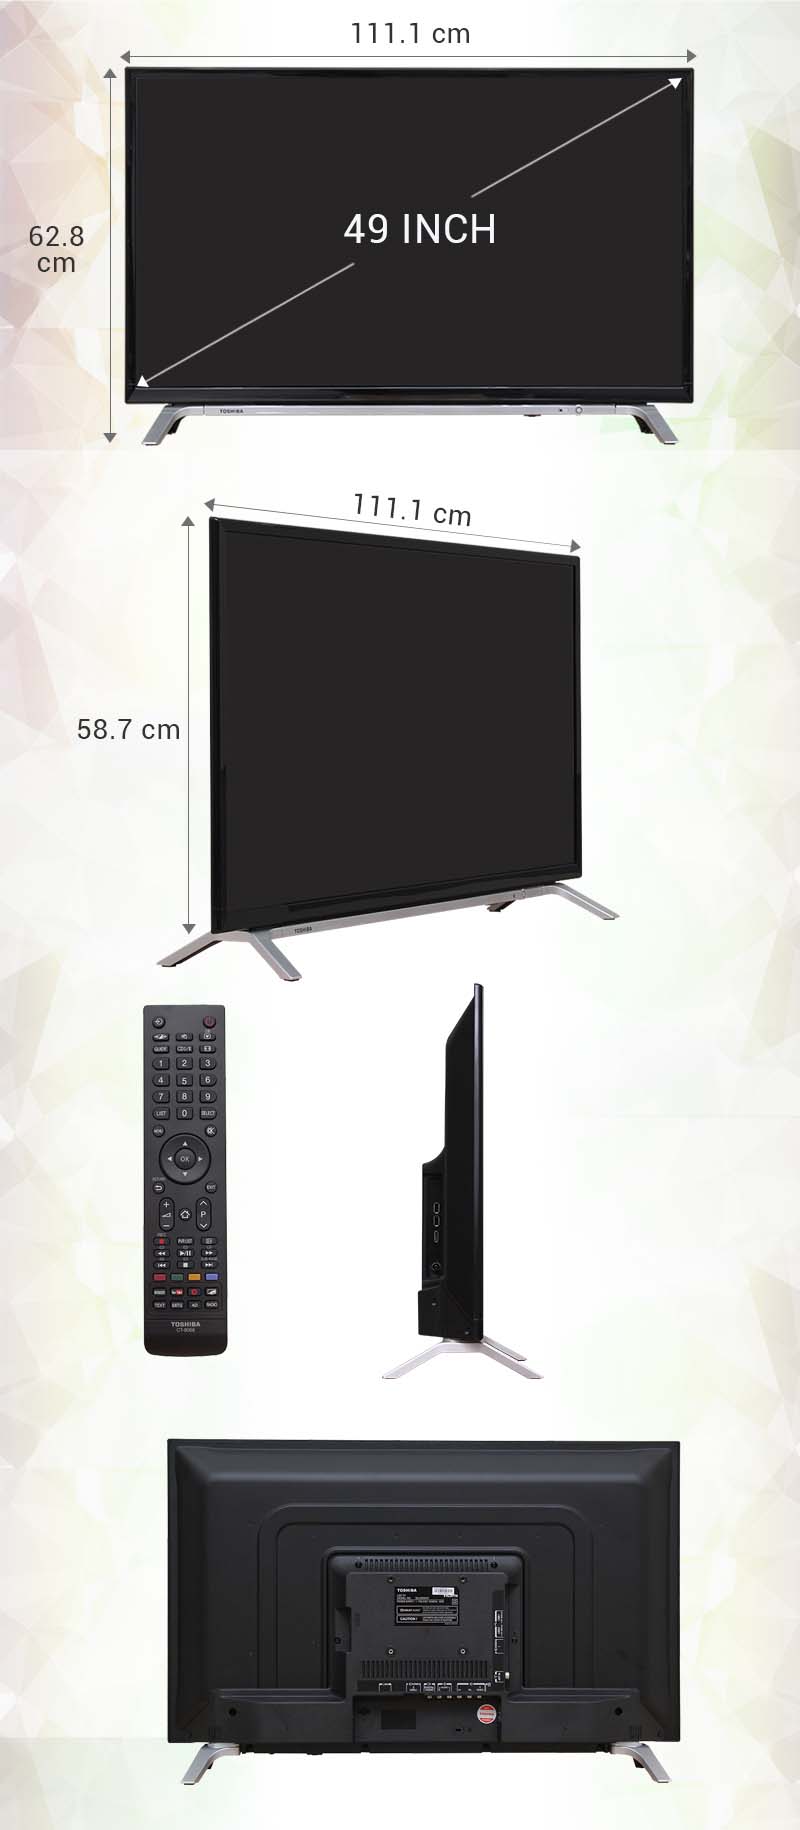 Smart Tivi Toshiba 49 inch 49L5650 - Kích thước tivi